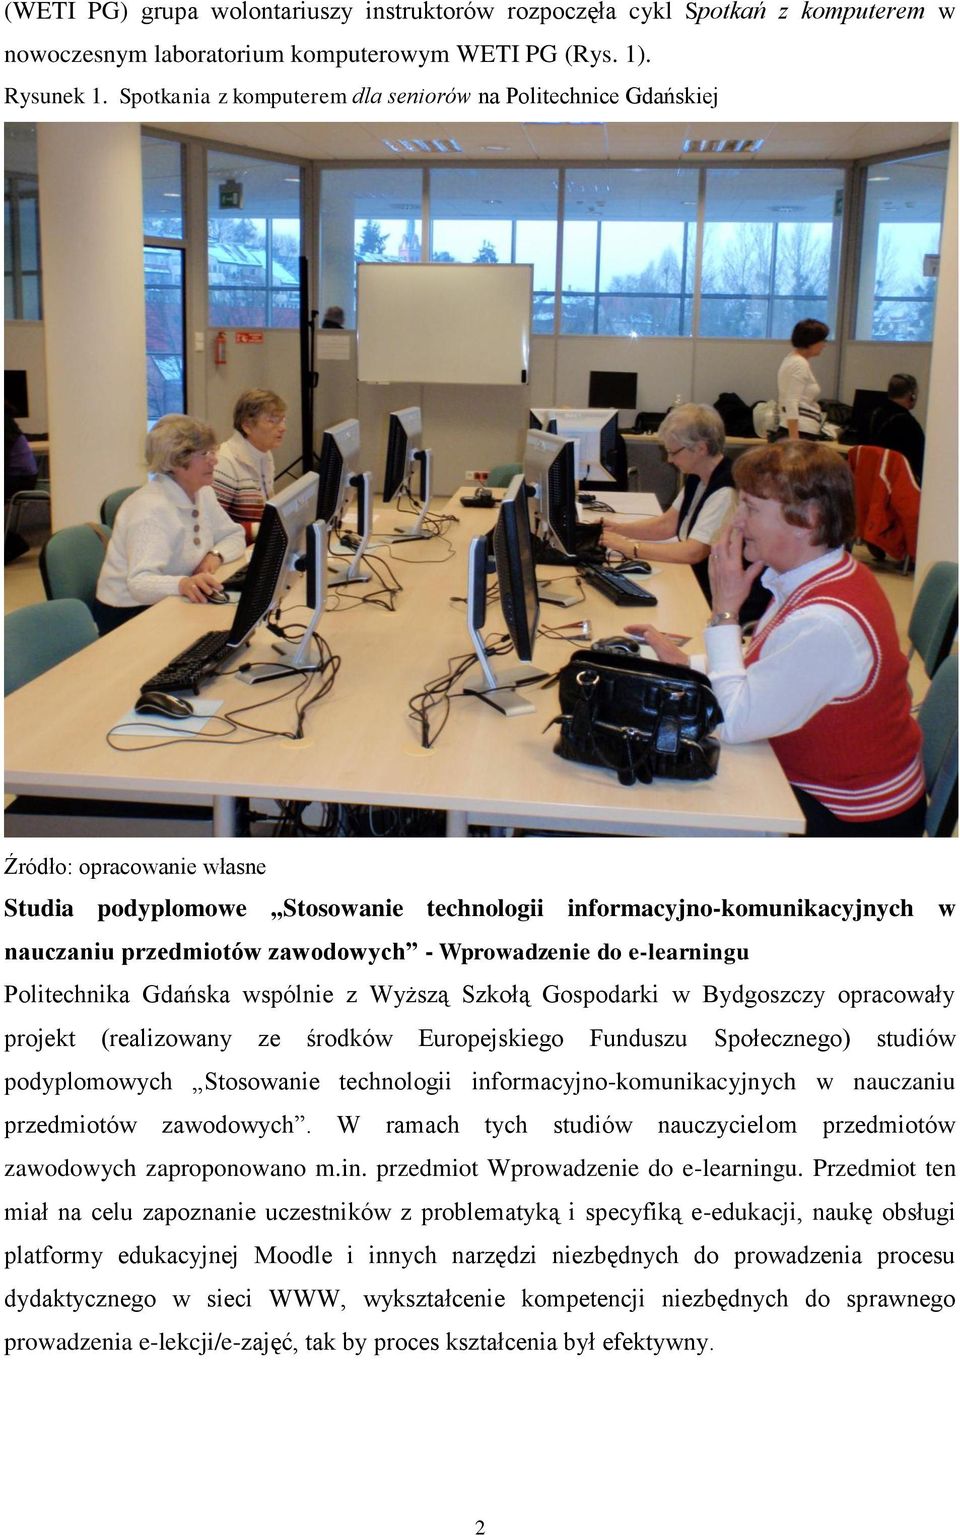 Wprowadzenie do e-learningu Politechnika Gdańska wspólnie z Wyższą Szkołą Gospodarki w Bydgoszczy opracowały projekt (realizowany ze środków Europejskiego Funduszu Społecznego) studiów podyplomowych